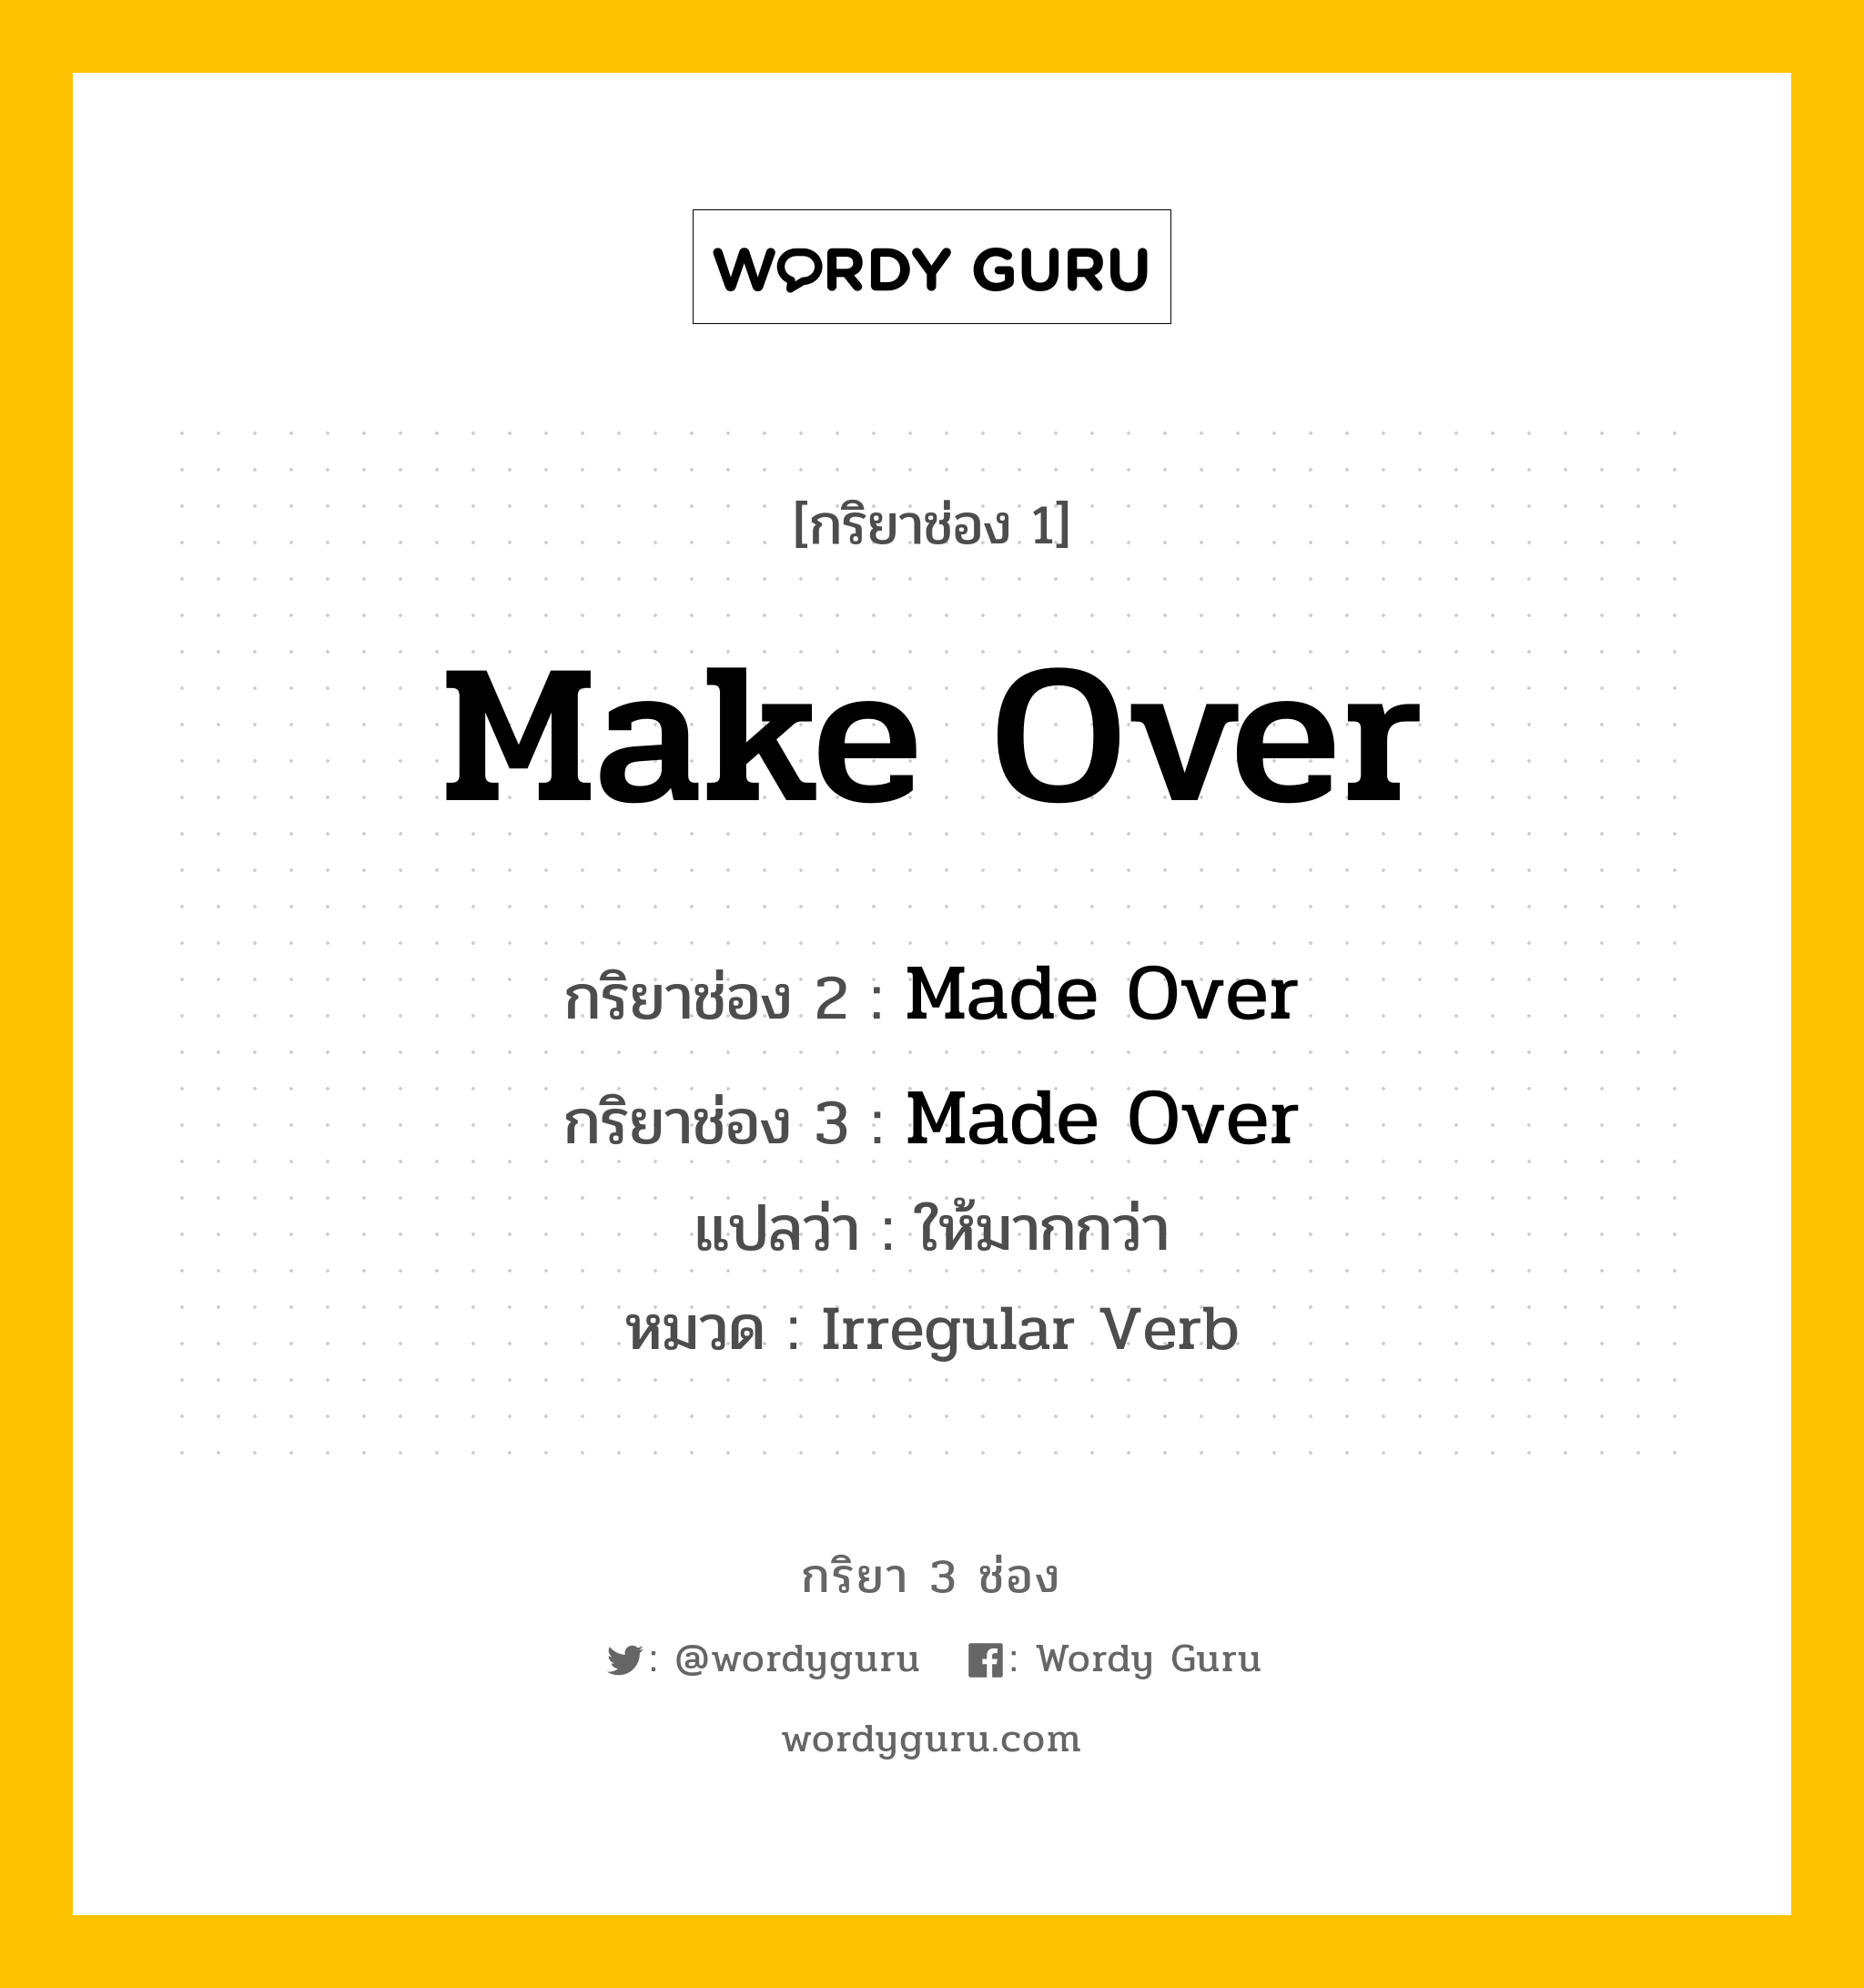 กริยา 3 ช่อง: Make Over ช่อง 2 Make Over ช่อง 3 คืออะไร, กริยาช่อง 1 Make Over กริยาช่อง 2 Made Over กริยาช่อง 3 Made Over แปลว่า ให้มากกว่า หมวด Irregular Verb หมวด Irregular Verb